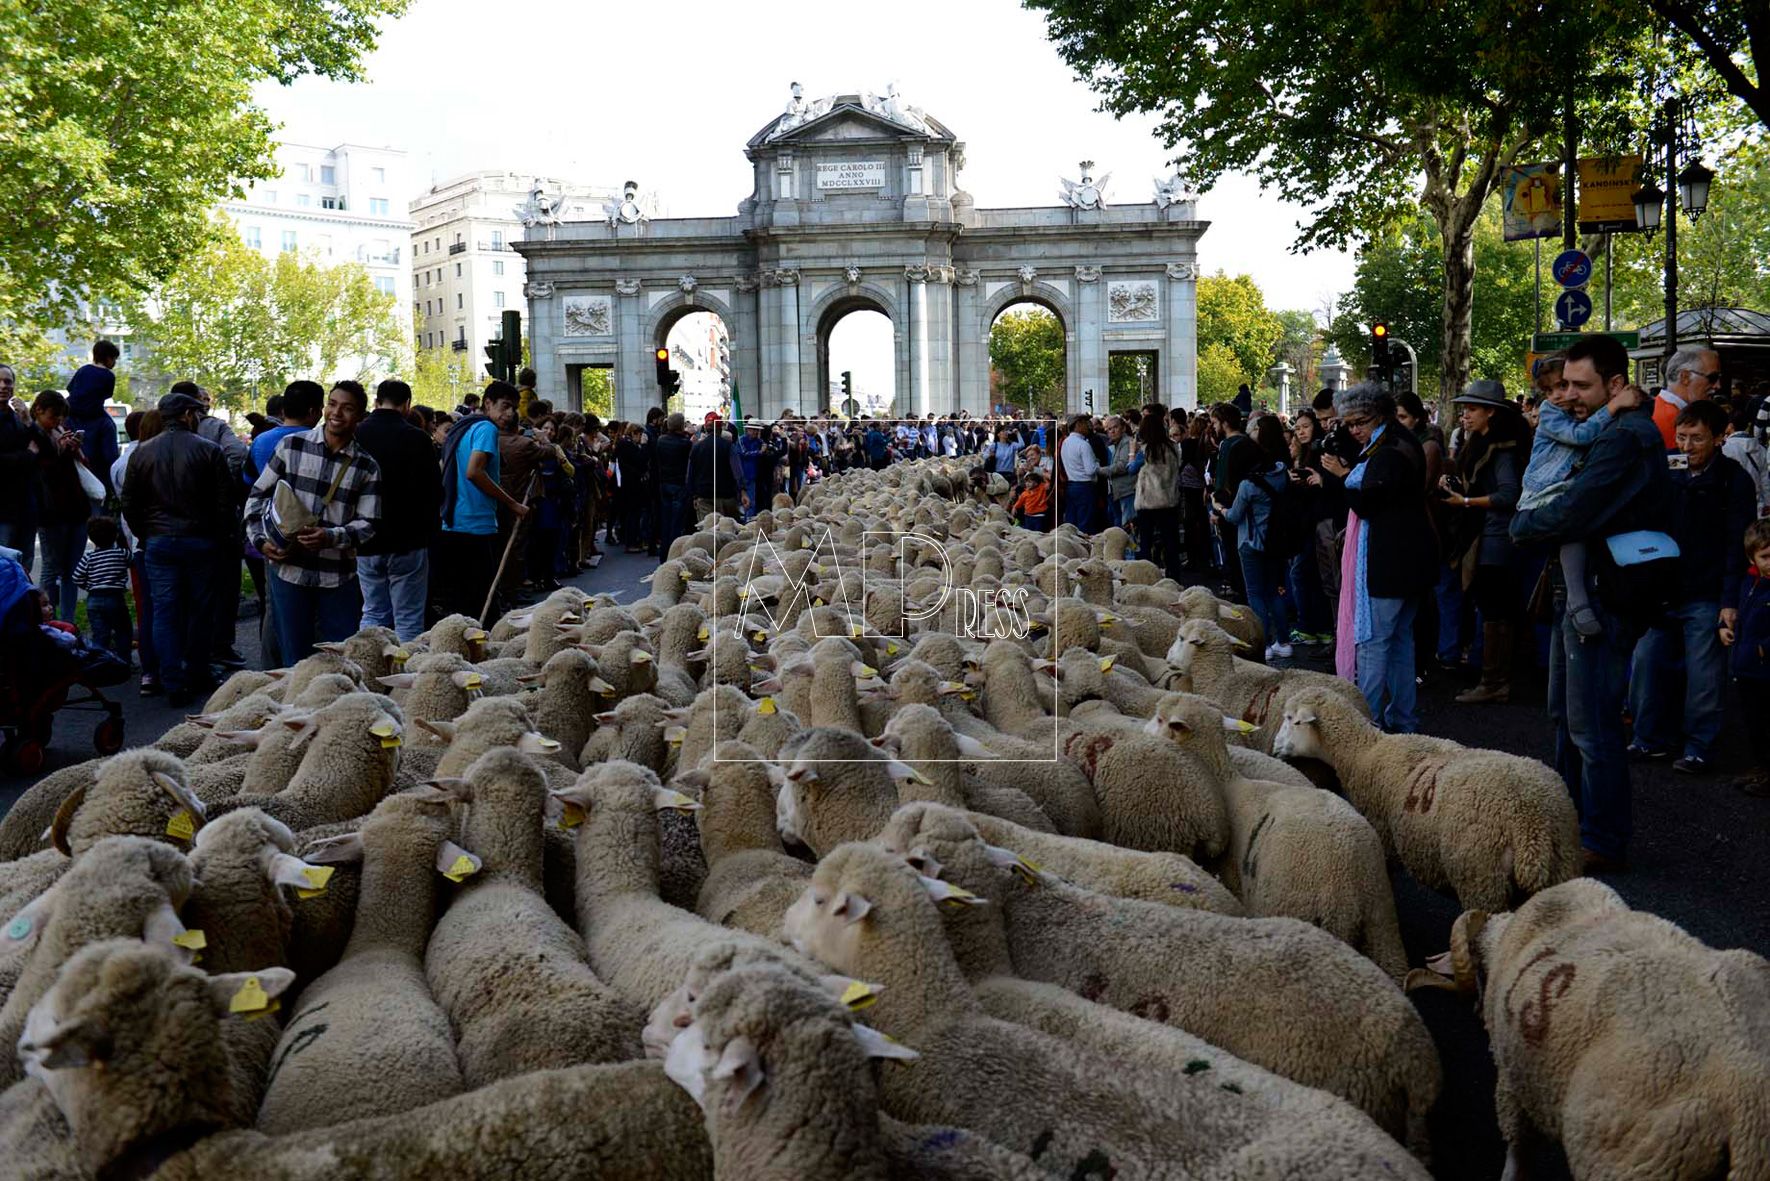 2.000 ovejas en el centro de Madrid